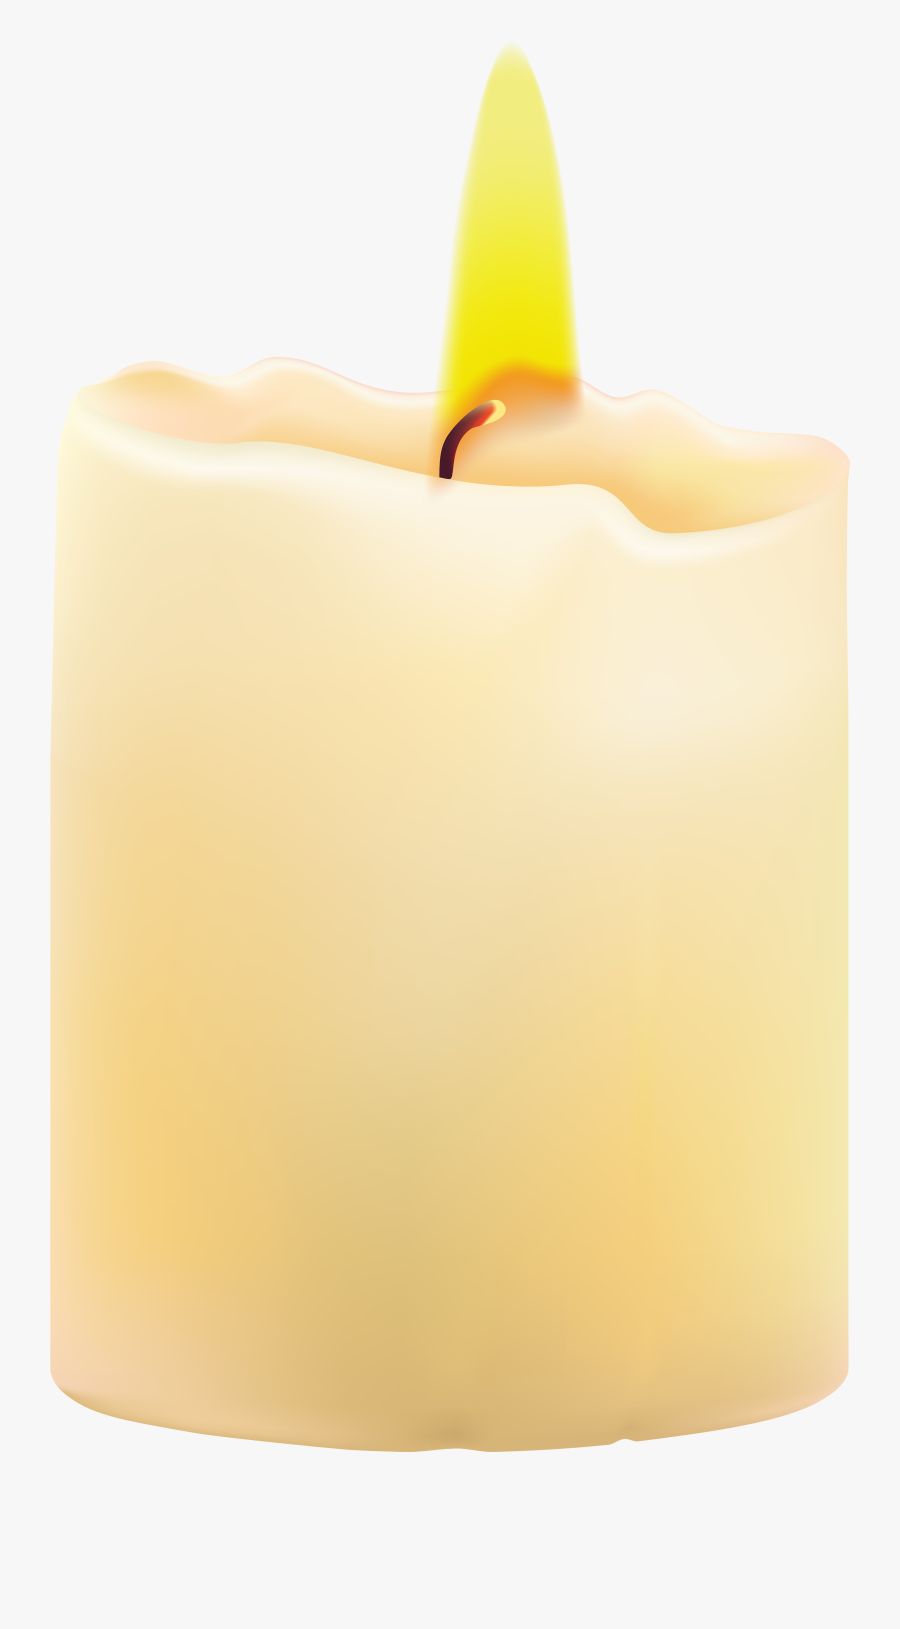 Candle Png Clip Art - Свеча Пнг, Transparent Clipart